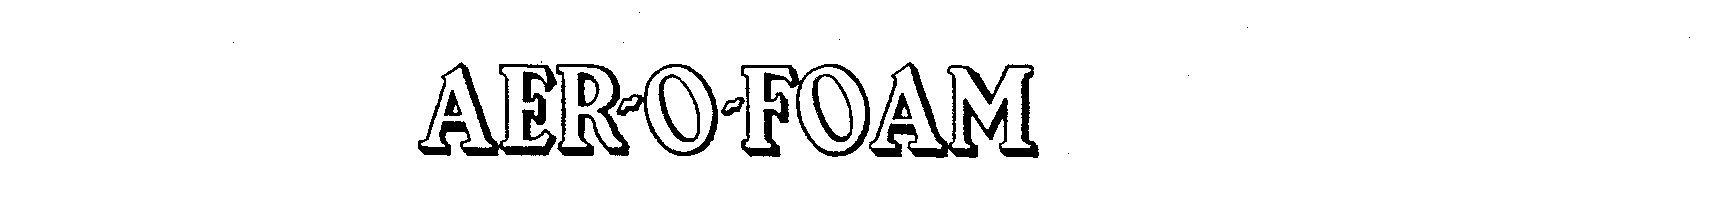  AER-O-FOAM